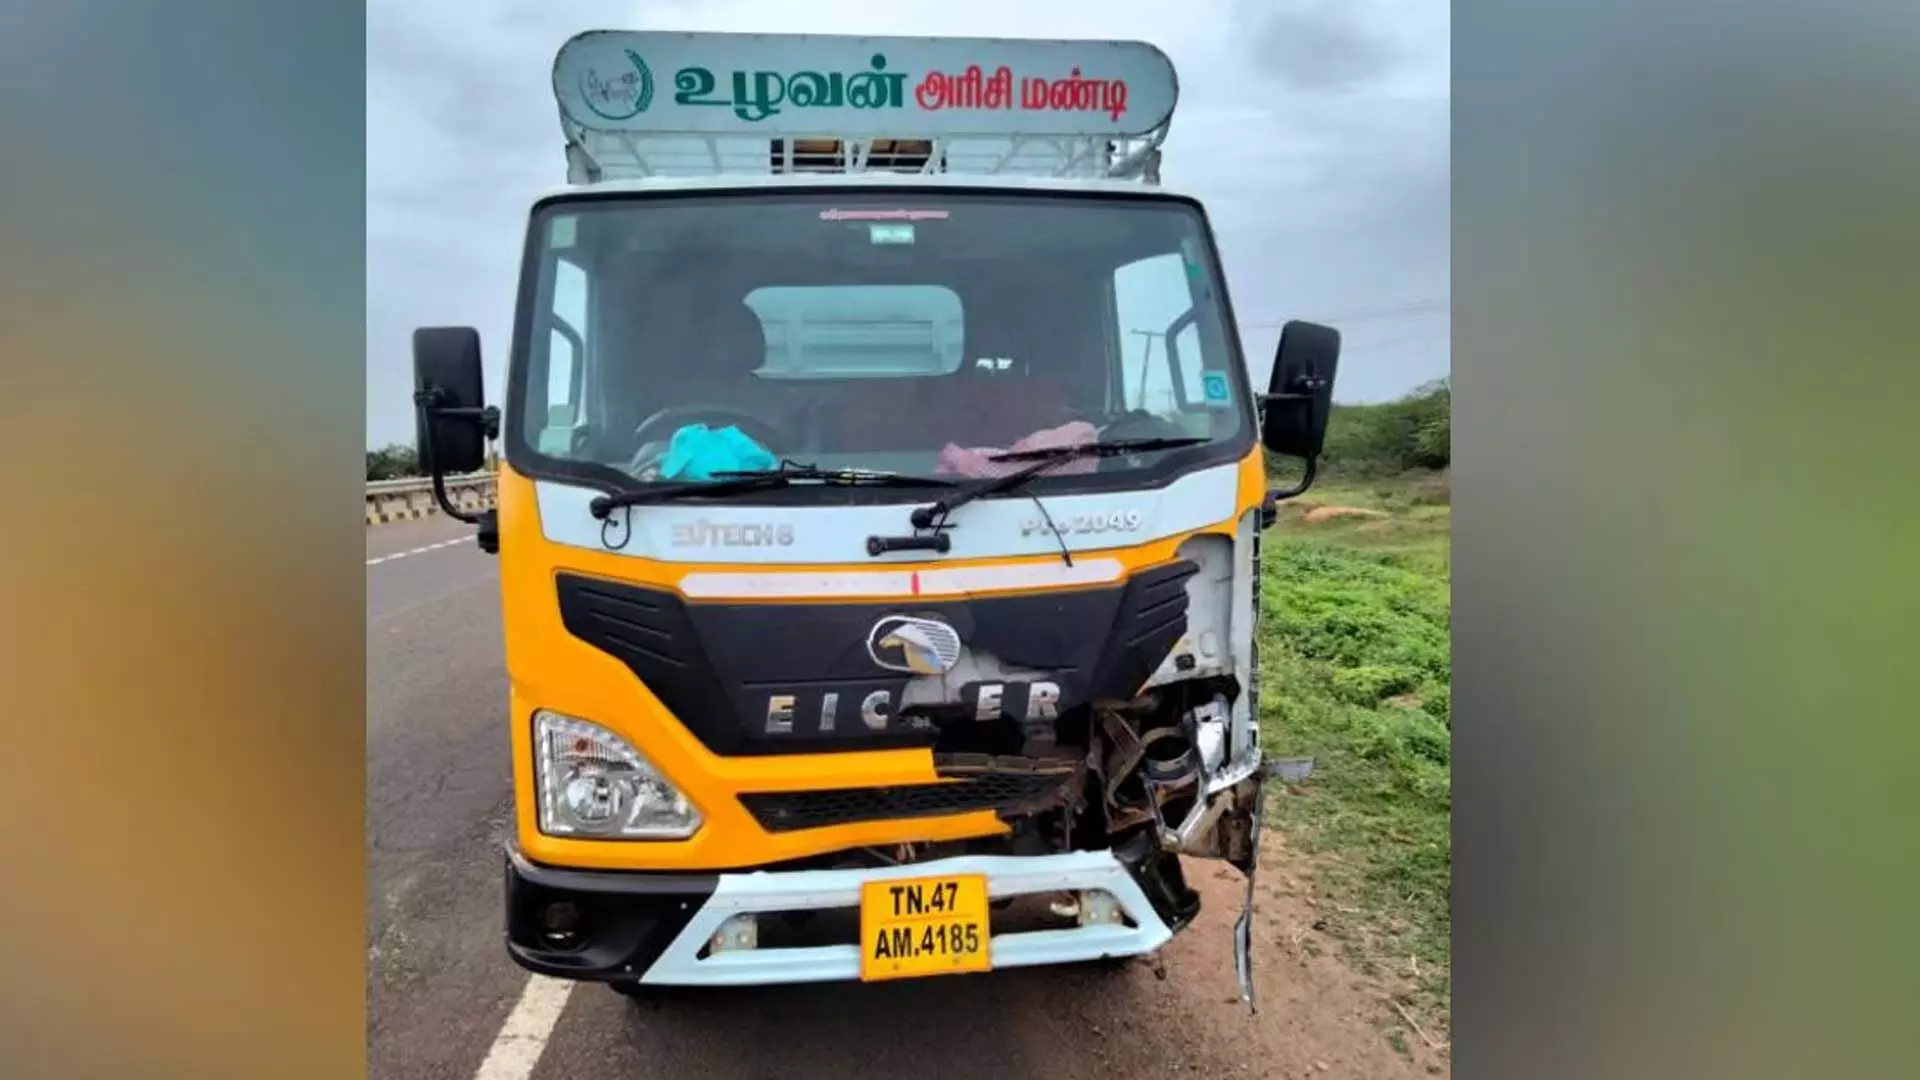 Tamil Nadu News: तंजावुर-तिरुचि राष्ट्रीय राजमार्ग पर वैन की टक्कर से पांच पदयात्रा तीर्थयात्रियों की मौत